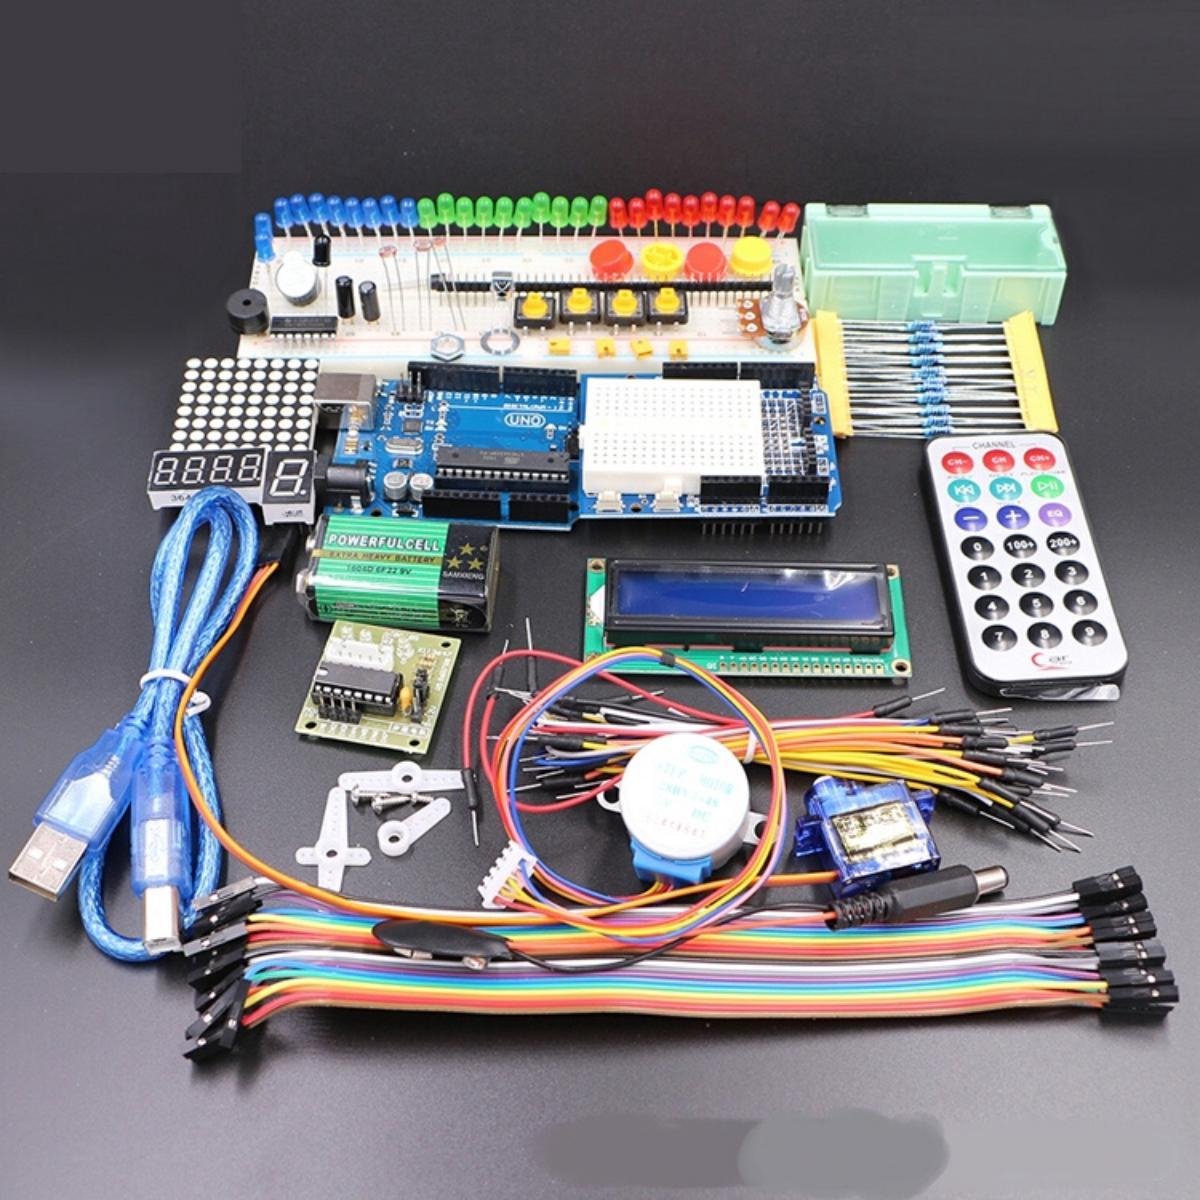 Arduino starter. Arduino Starter Kit uno r3. Набор Starter Kit Arduino uno r3. Ардуино стартер кит uno r3. RFID Starter Kit for Arduino uno r3.